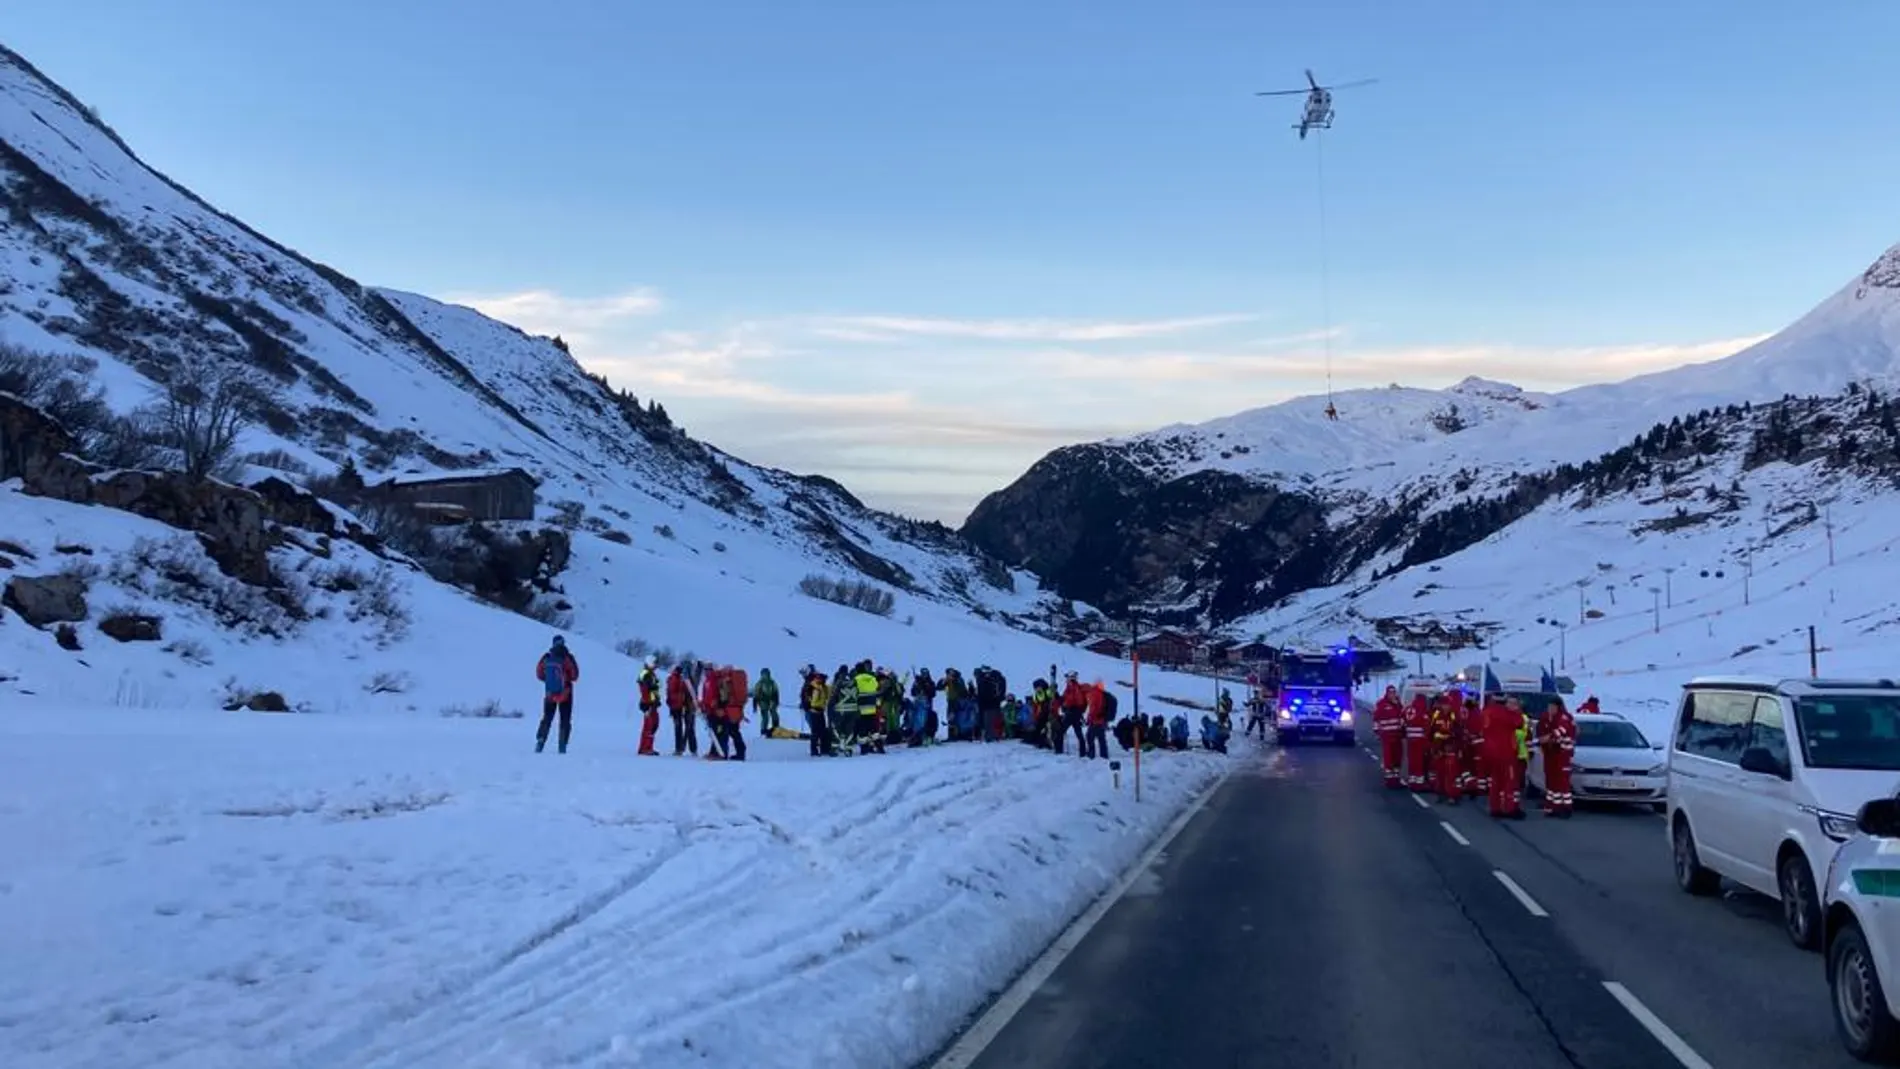 Una avalancha en una pista de esquí deja al menos nueve desaparecidos en Austria